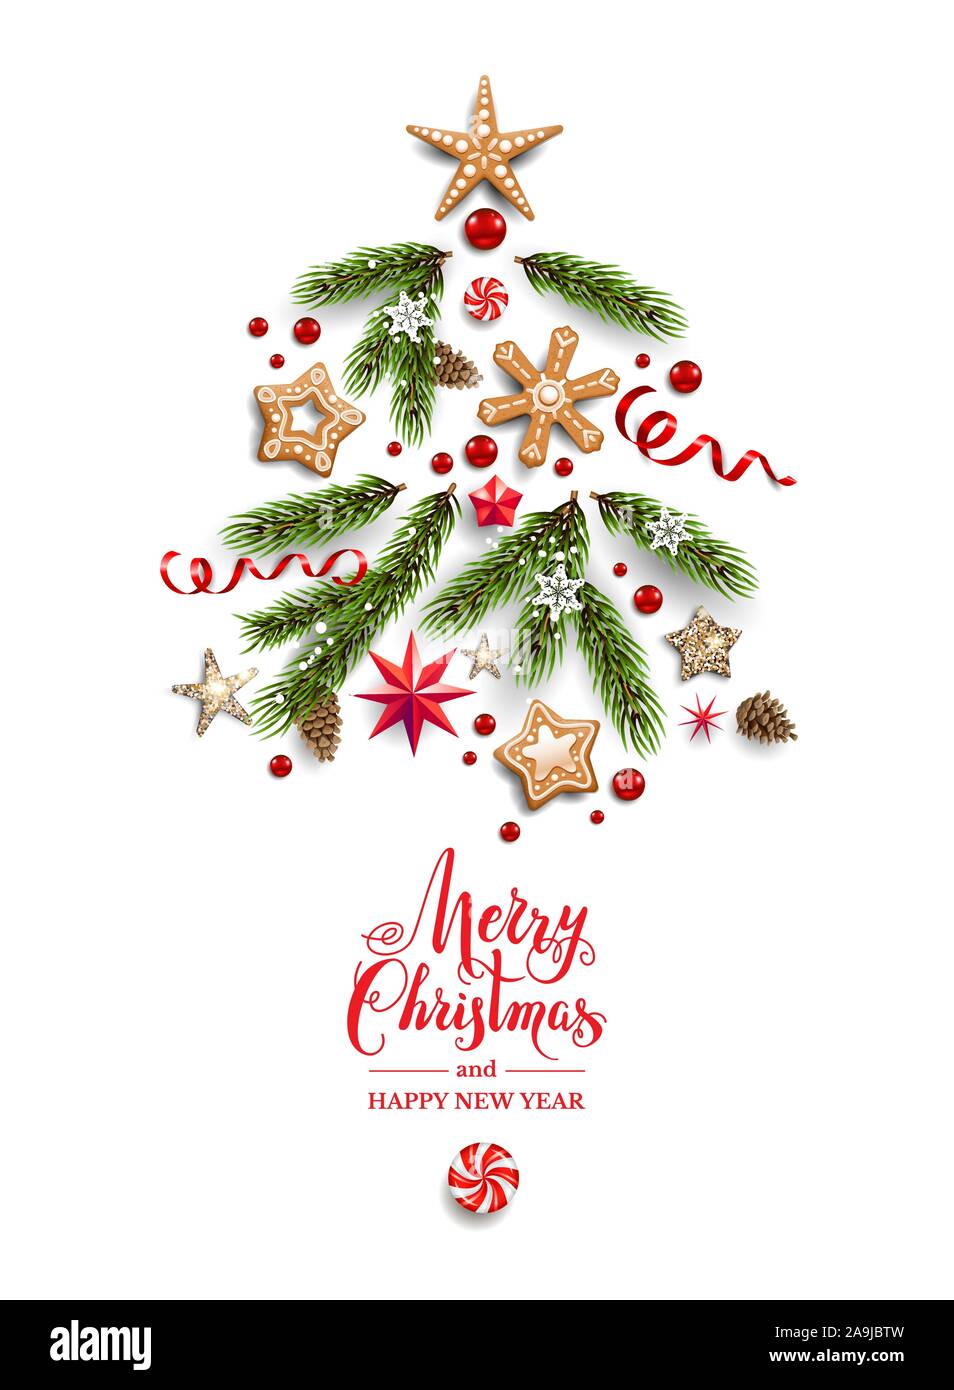 Weihnachtsbaum Silhouette aus realistischen Schneeflocken, Pine Tree Branches, Lebkuchen und Sterne flach auf weißem Hintergrund. Winter Grusskarten. Stock Vektor